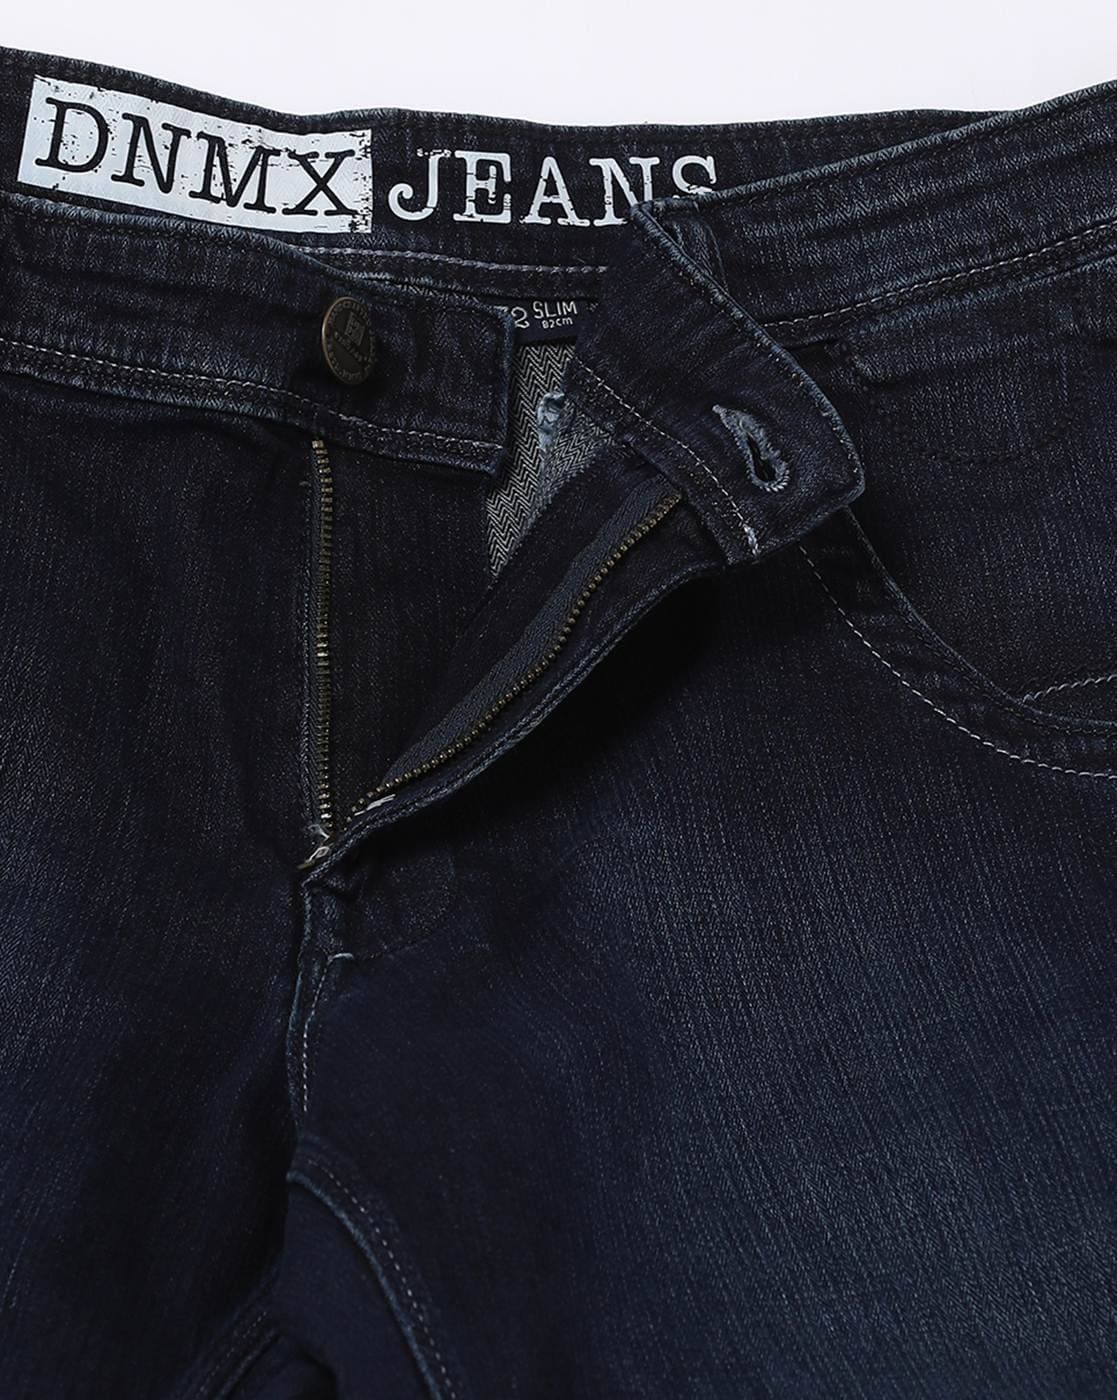 Men Lightly Washed Slim Fit Jeans